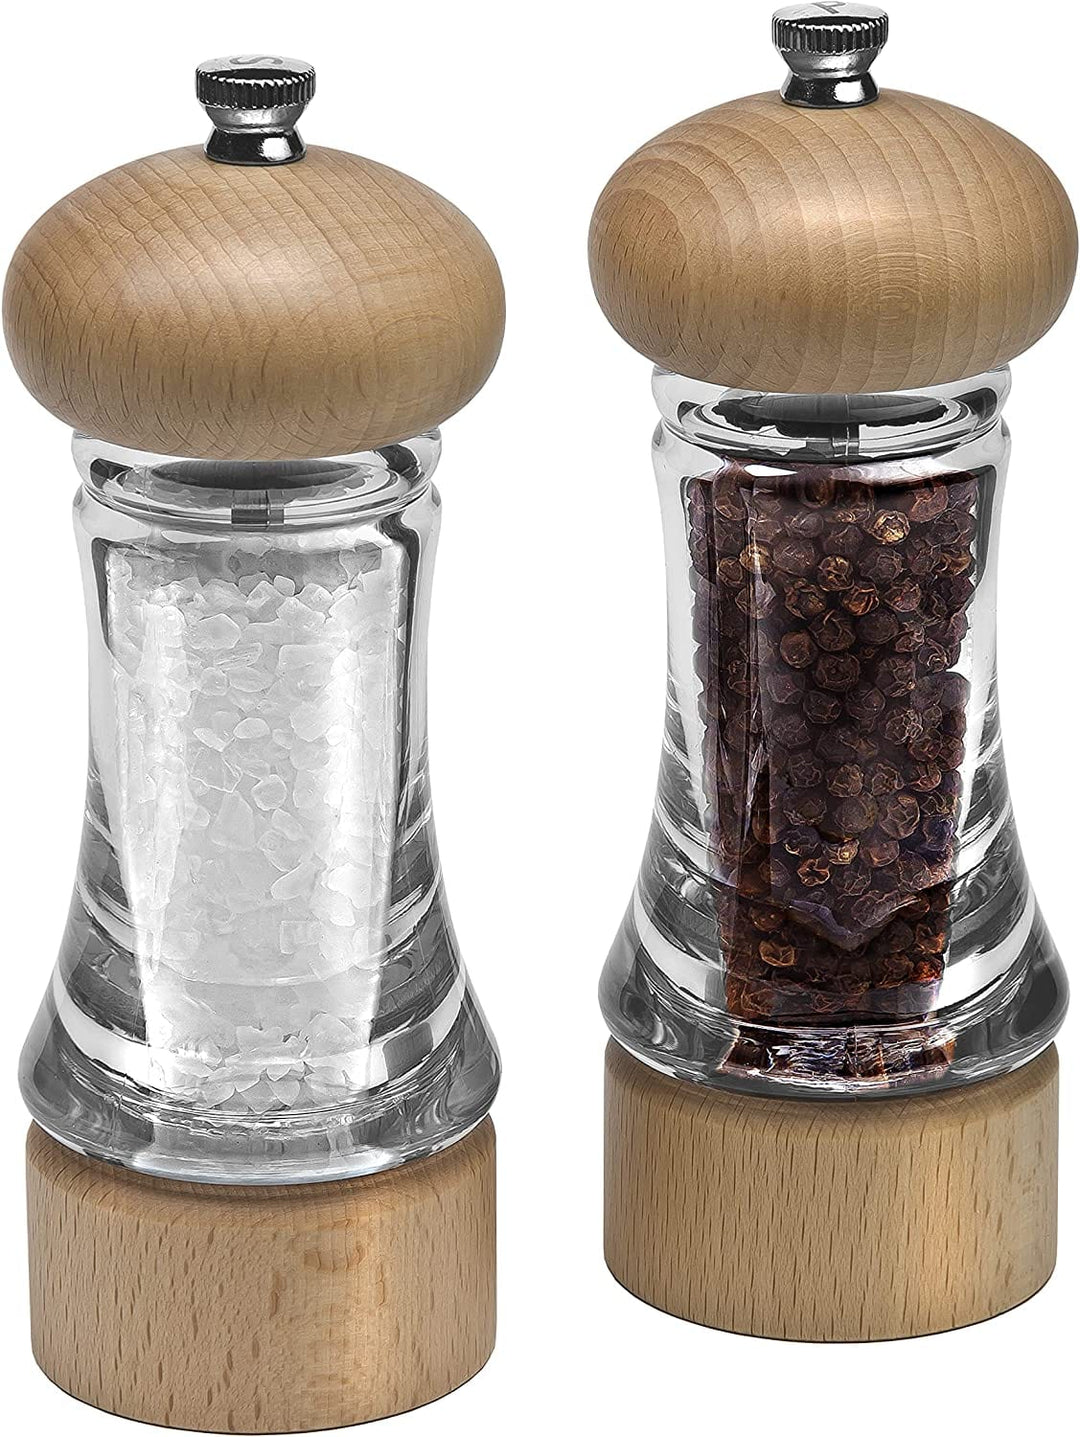 Salt and Pepper Grinder Set, Wood Pepper Mills, Wooden Salt